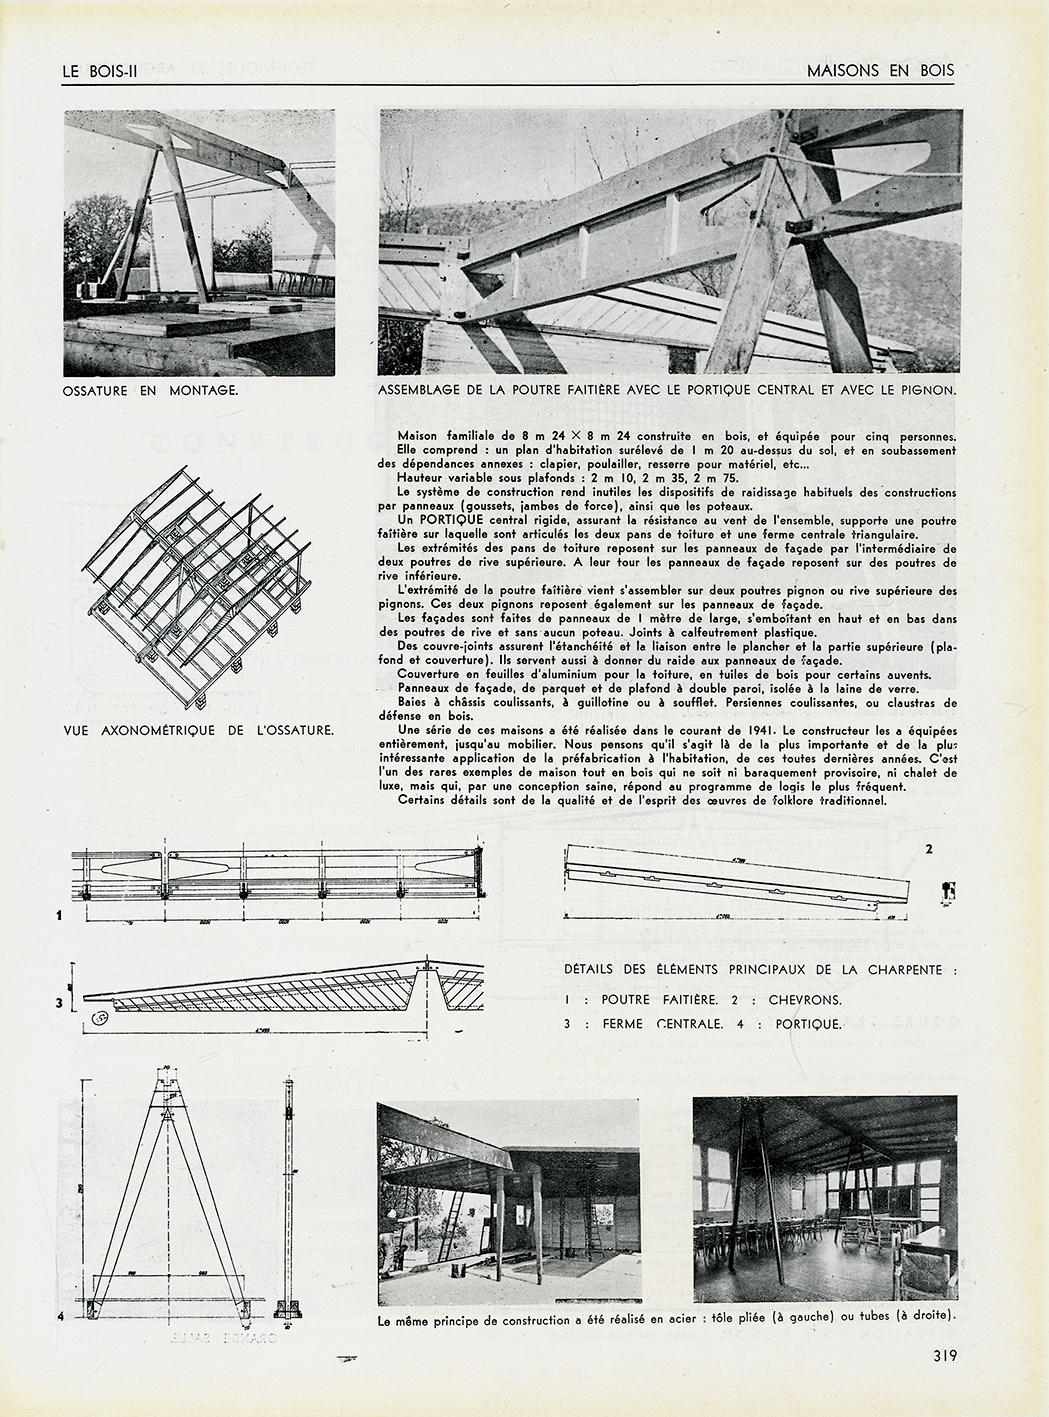 “Wooden house, BCC house, Ateliers Jean Prouvé system. Architect Pierre Jeanneret”, <i>Techniques et Architecture</i>, no. 9-10, September-October 1942.